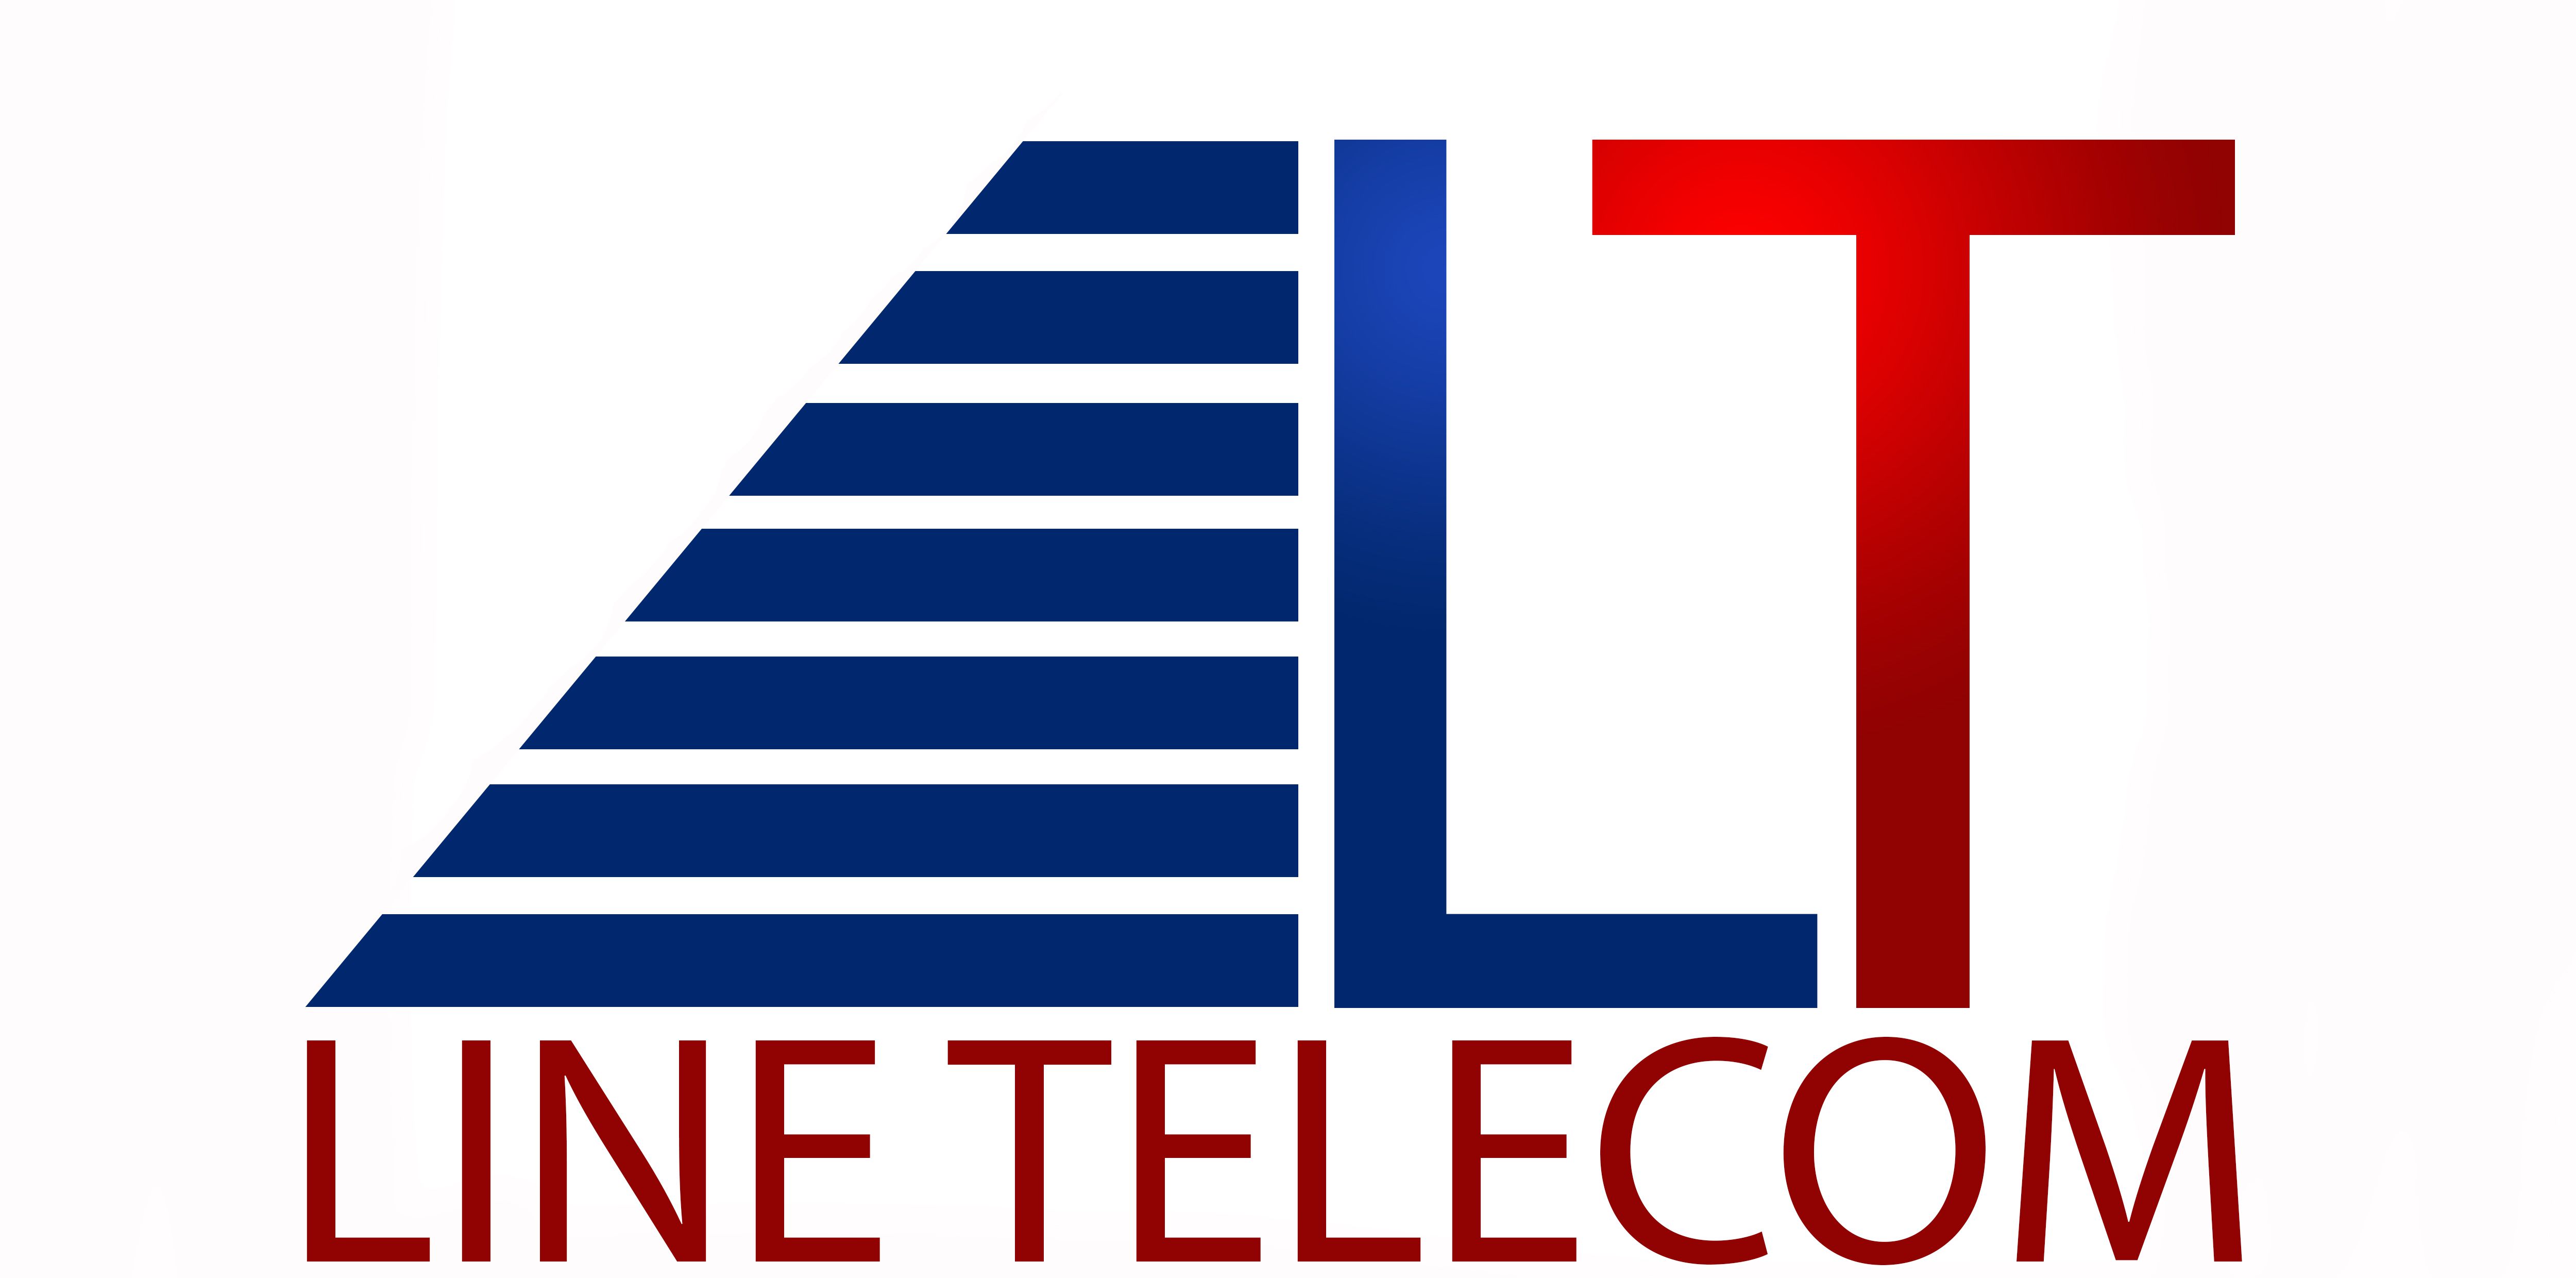 Line Telecom